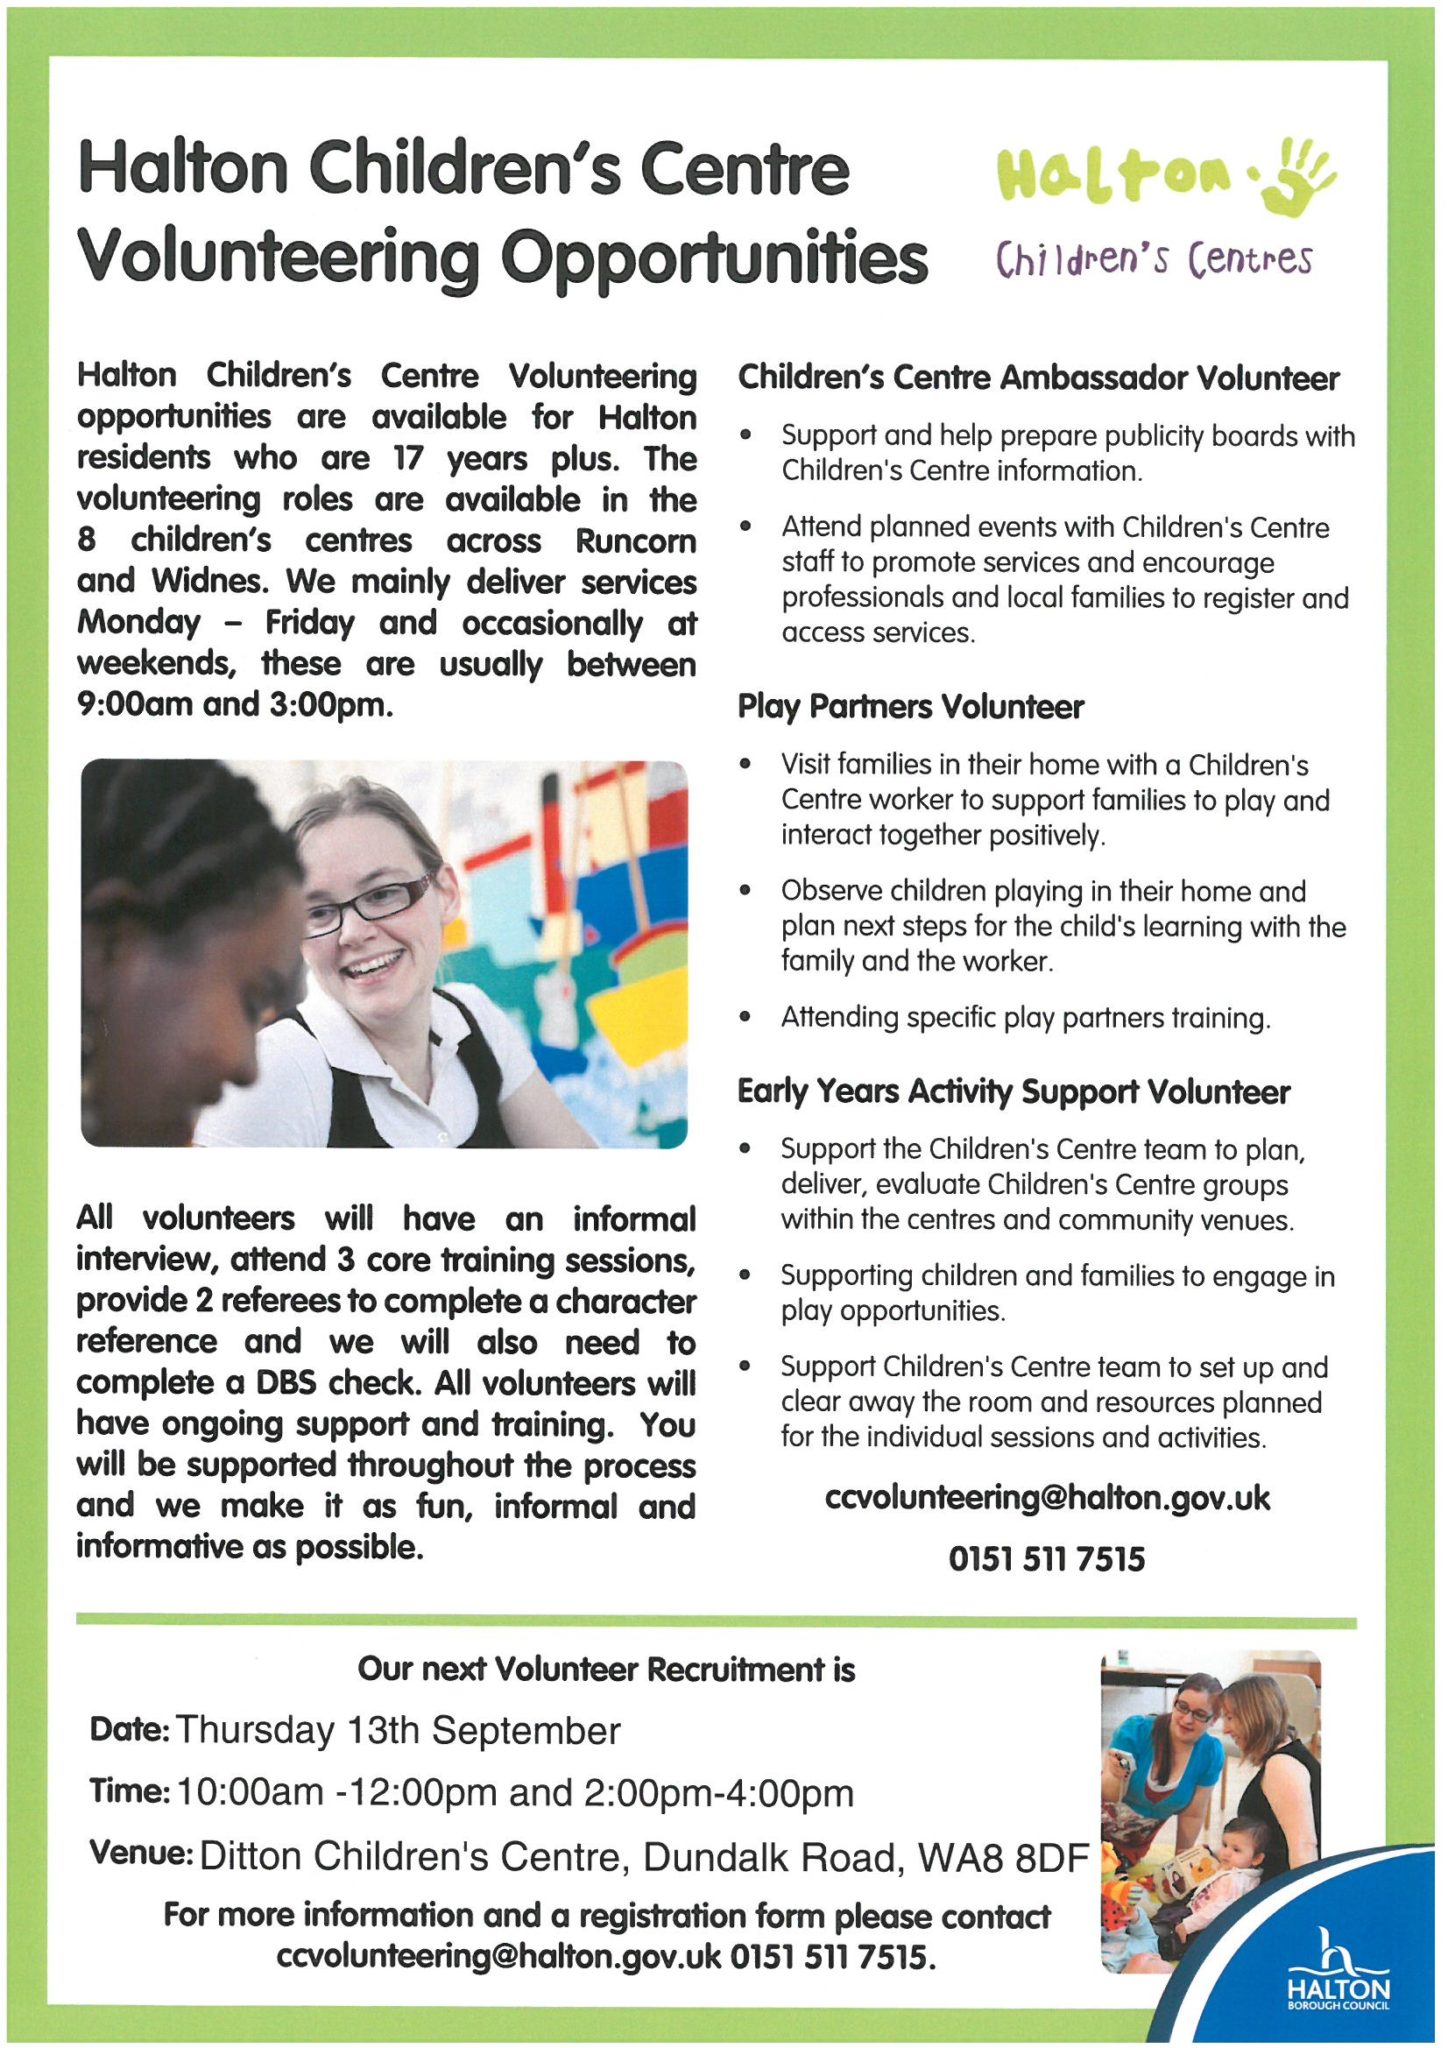 Volunteer opportunities to work with children